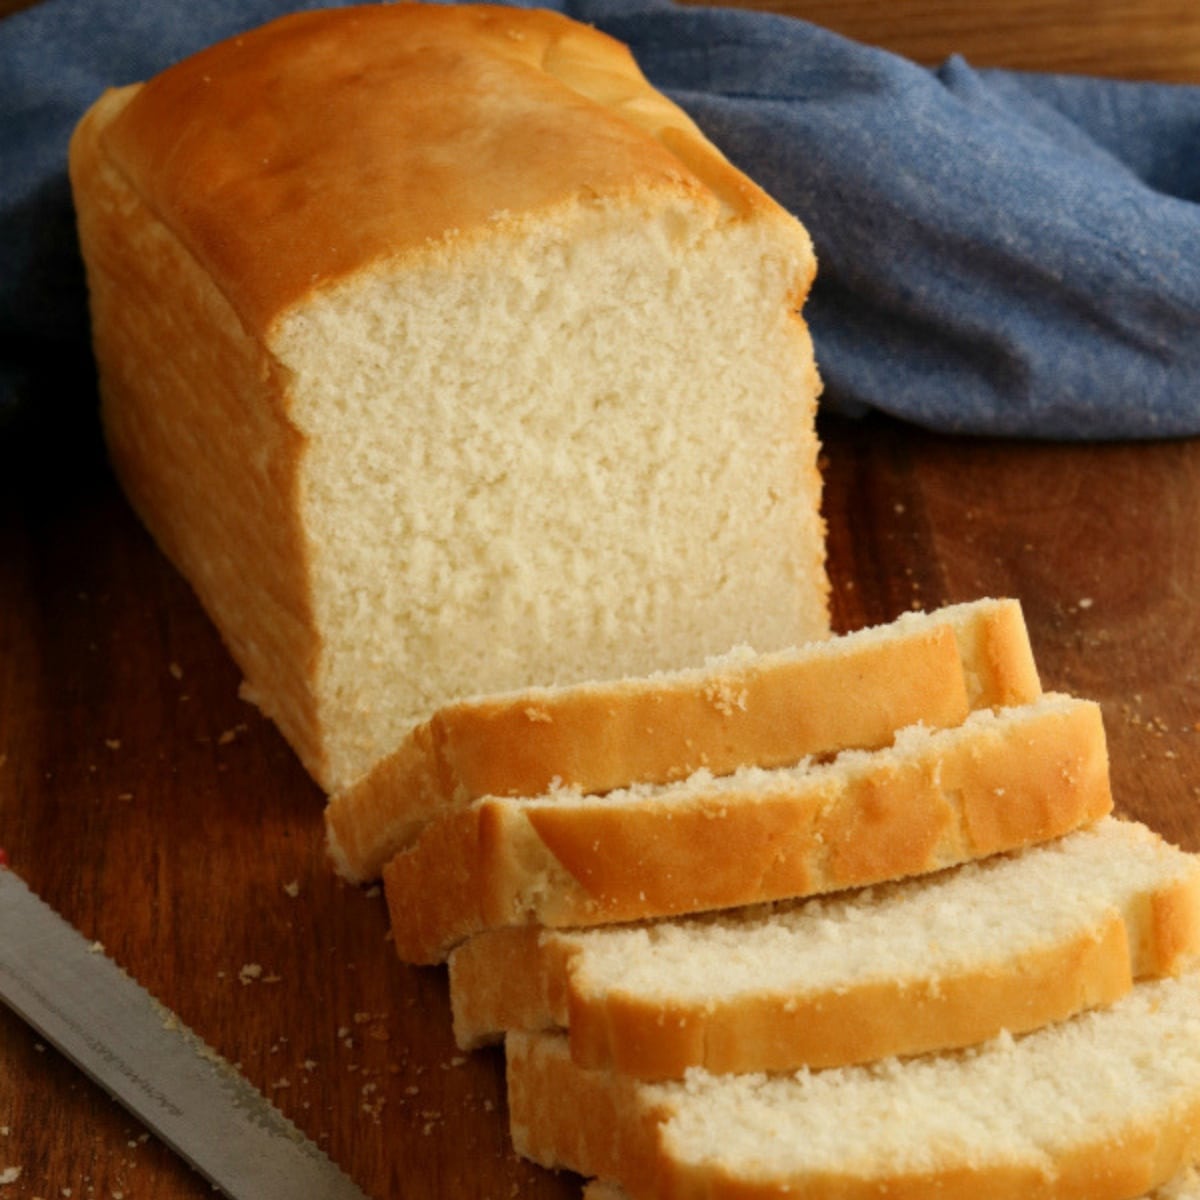 Gluten Free Bread Machine Recipe: White Bread, Gluten Free Recipes